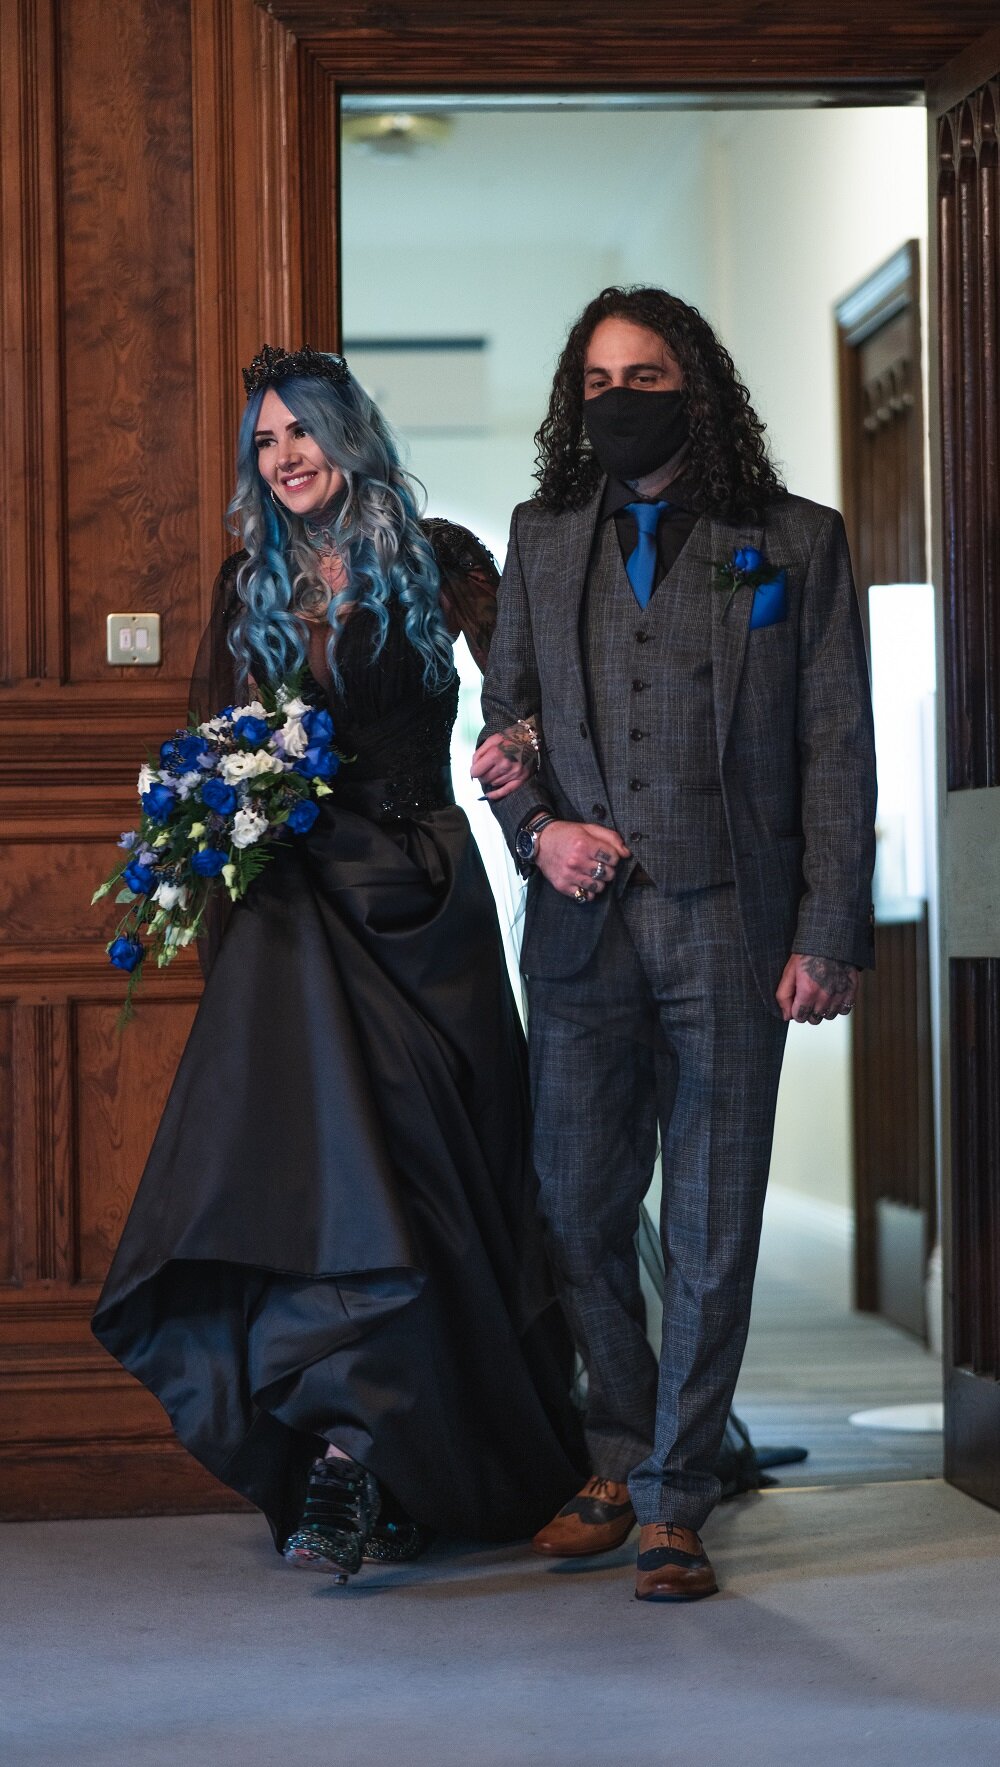 Legend Bridal benj_and_crystal_Gothic bride entrance.JPG